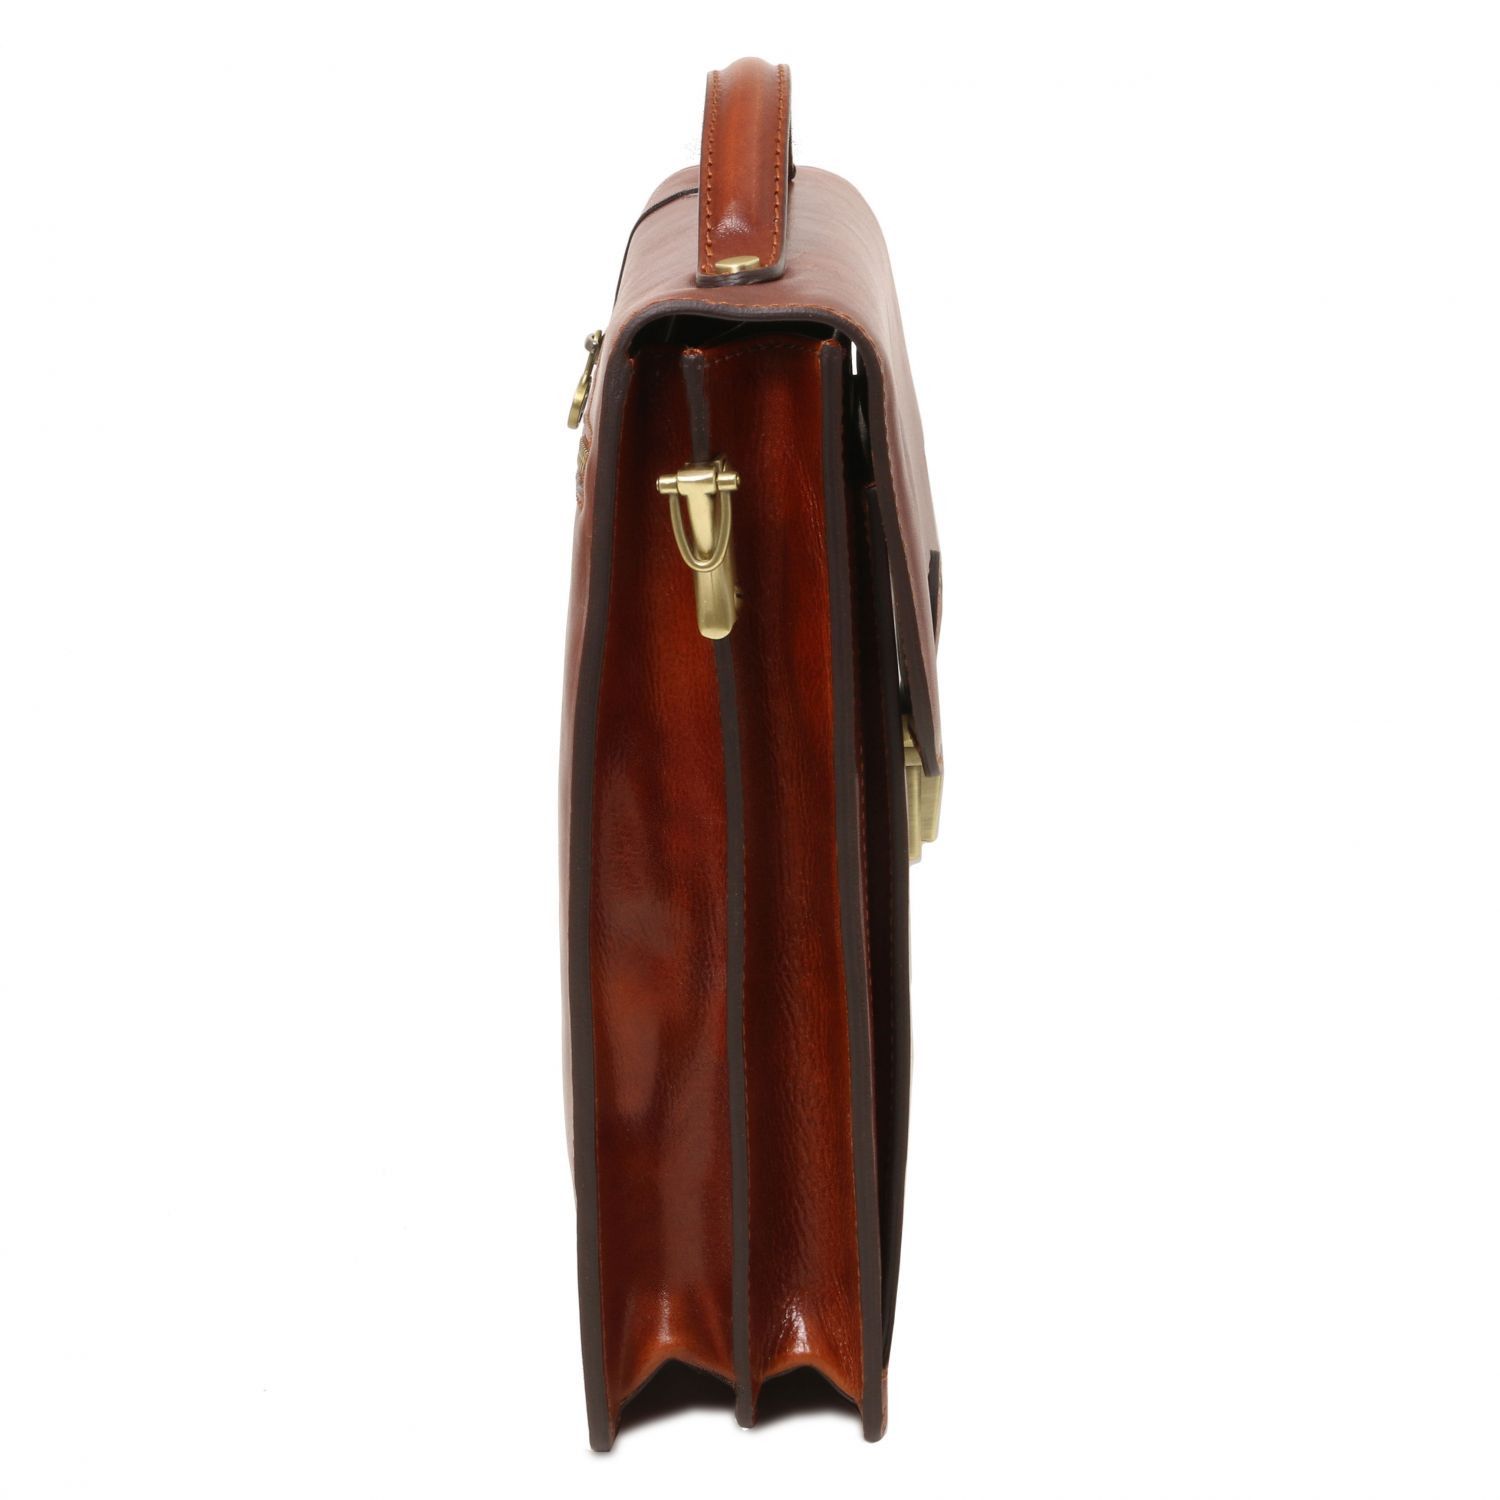 David - Sac bandoulière en cuir pour homme - Grand modèle - Marron foncé (TL141424)